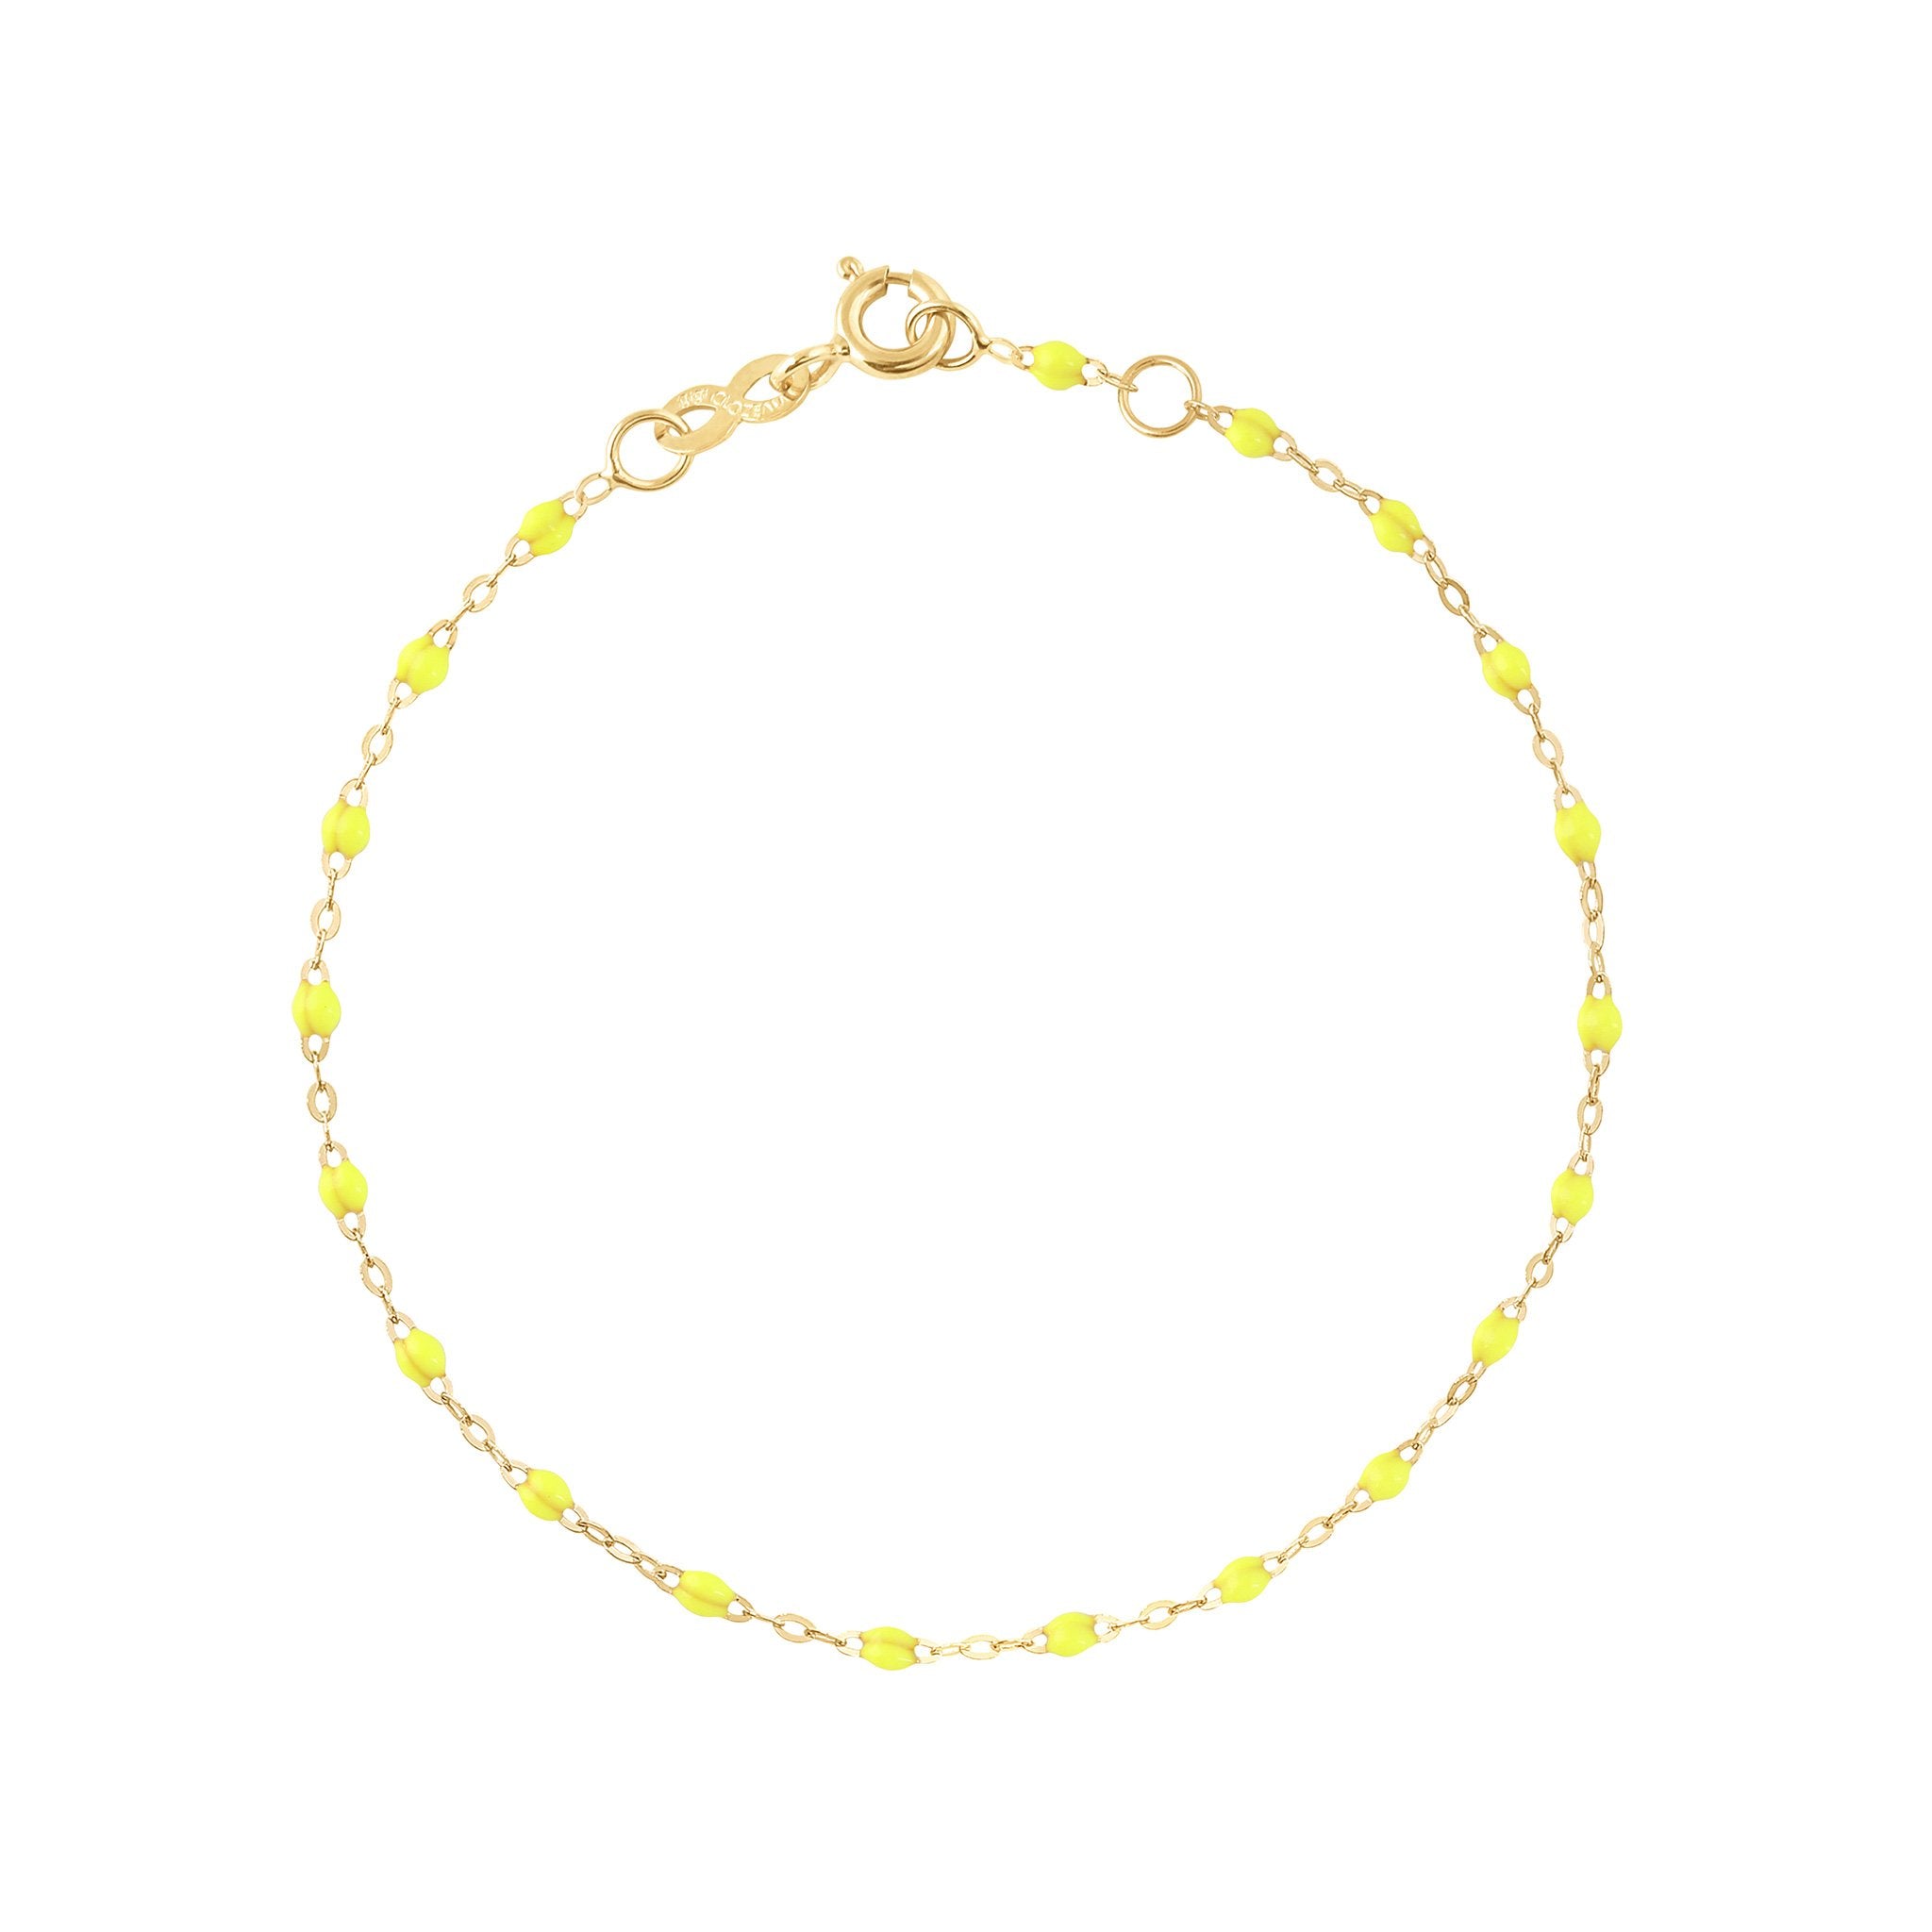 Bracelet jaune fluo Classique Gigi, or jaune, 17 cm